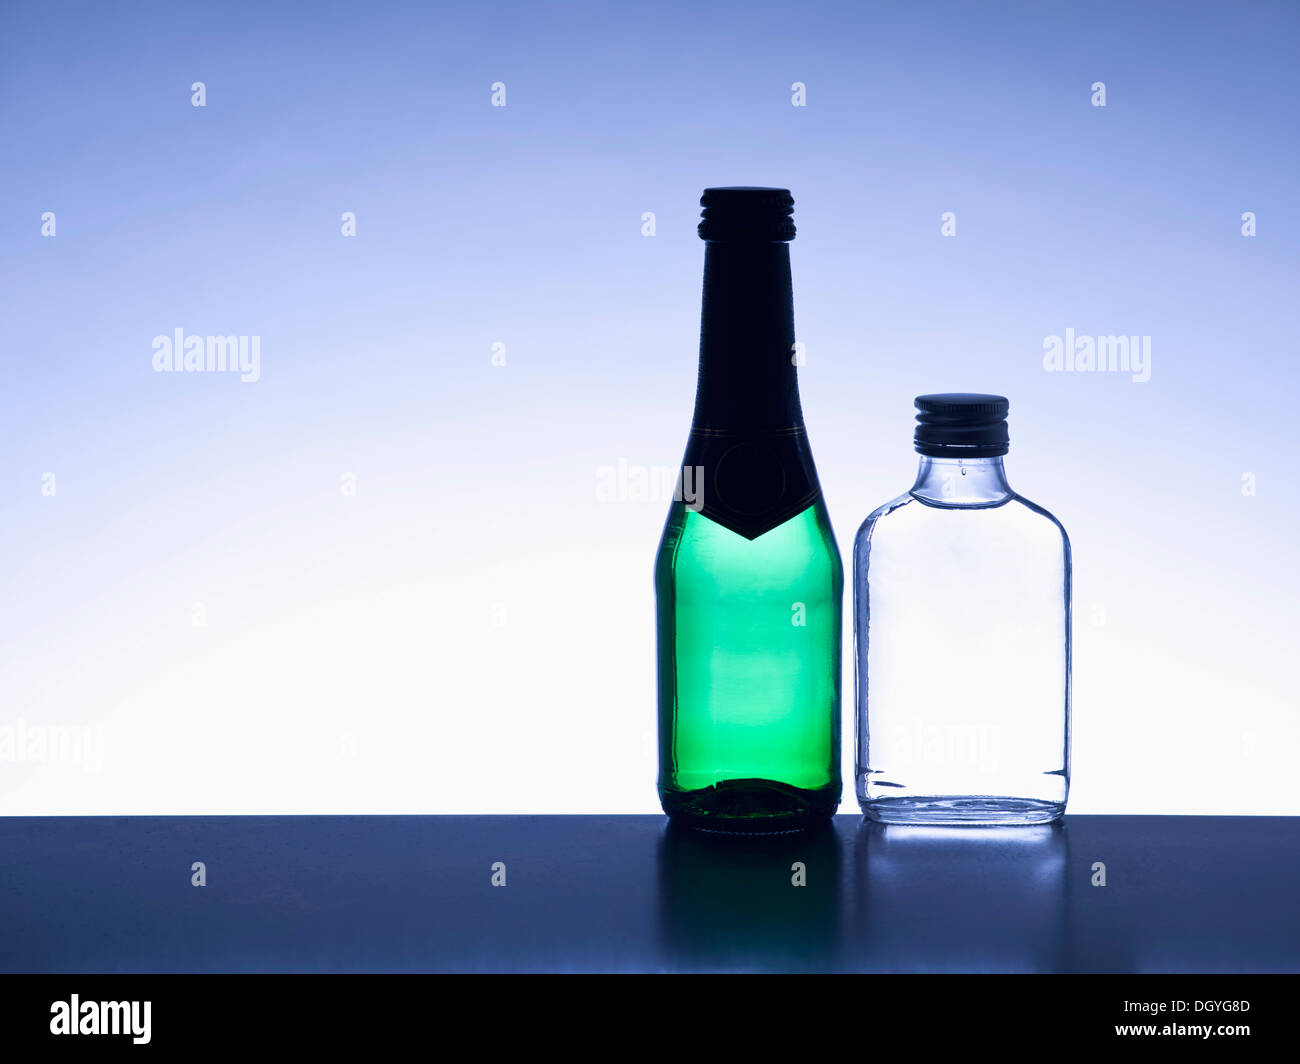 Deux bouteilles d'alcool miniatures côte à côte sans étiquettes, éclairé Banque D'Images